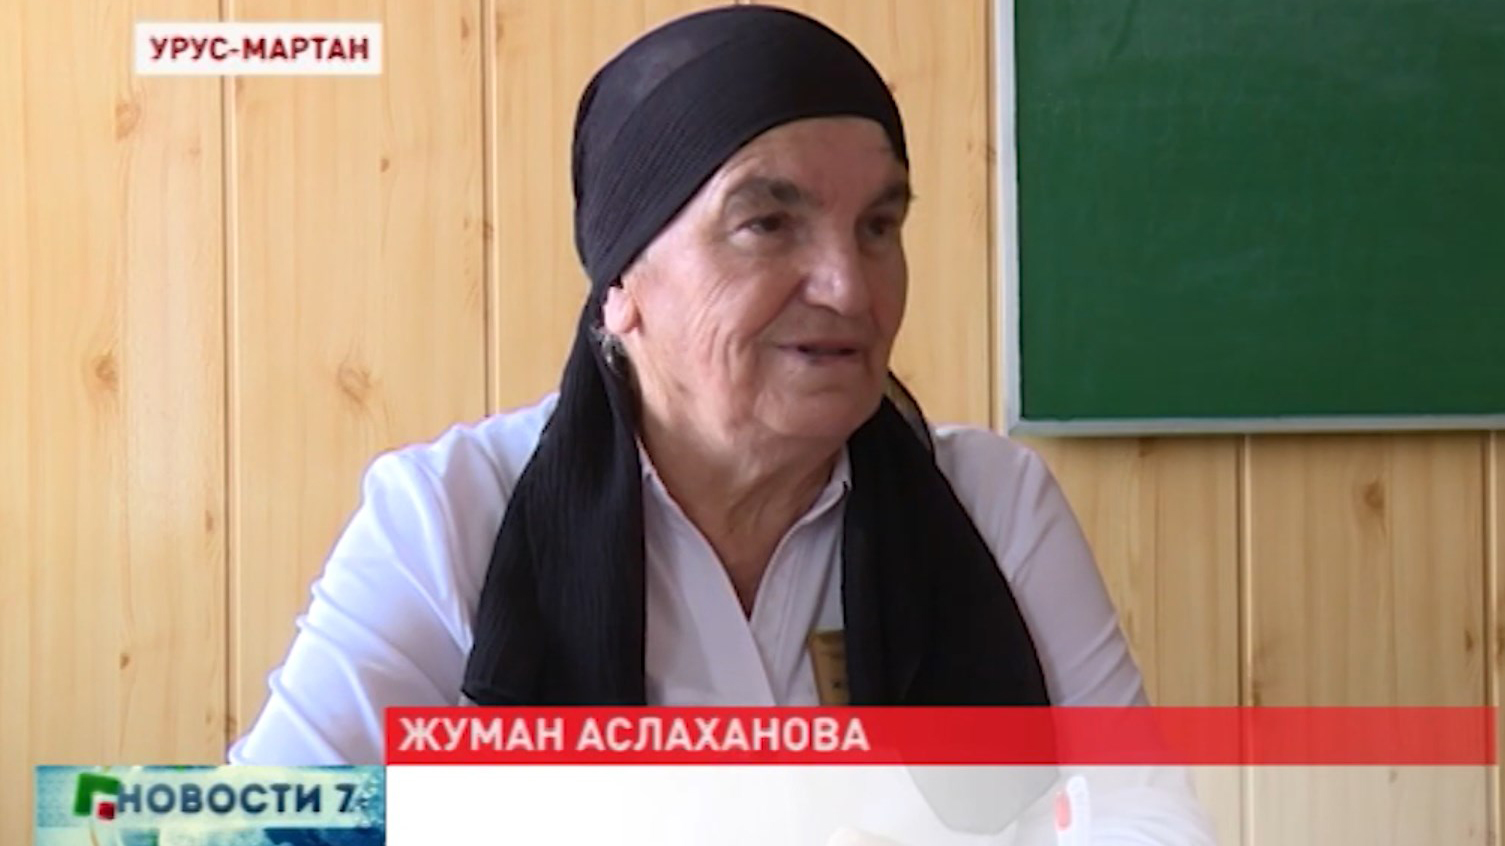 Жуман Аслаханова многодетная мама с учительским стажем в 50 лет